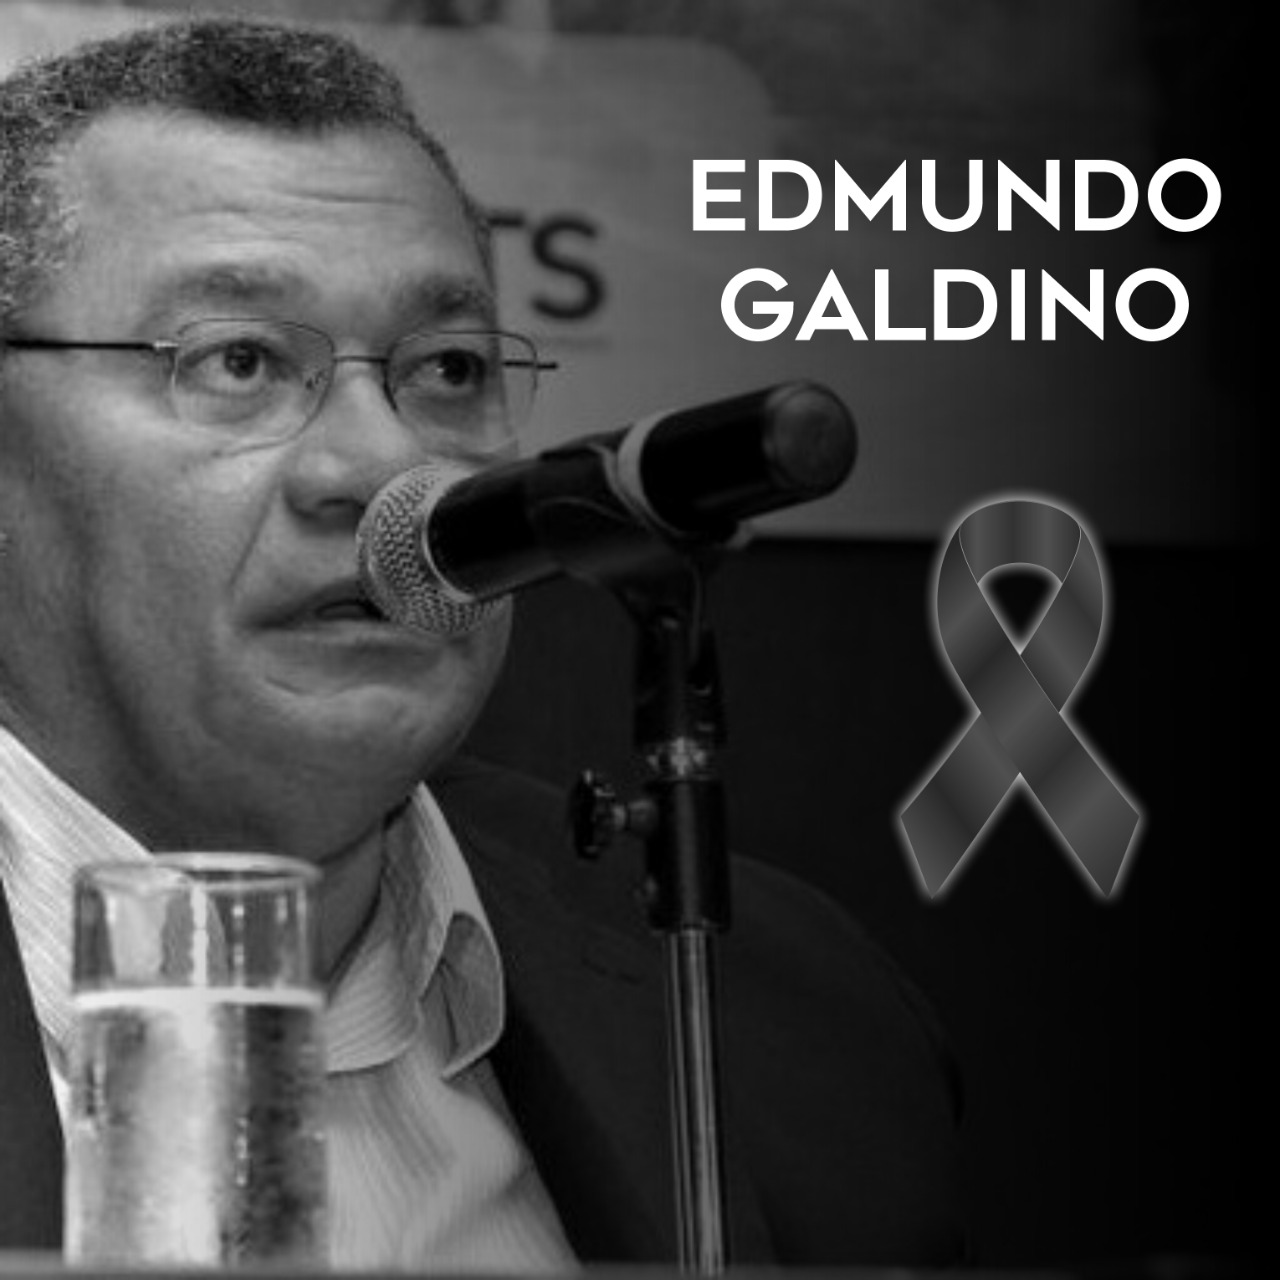 Morre o ex-deputado federal Edmundo Galdino, aos 63 anos